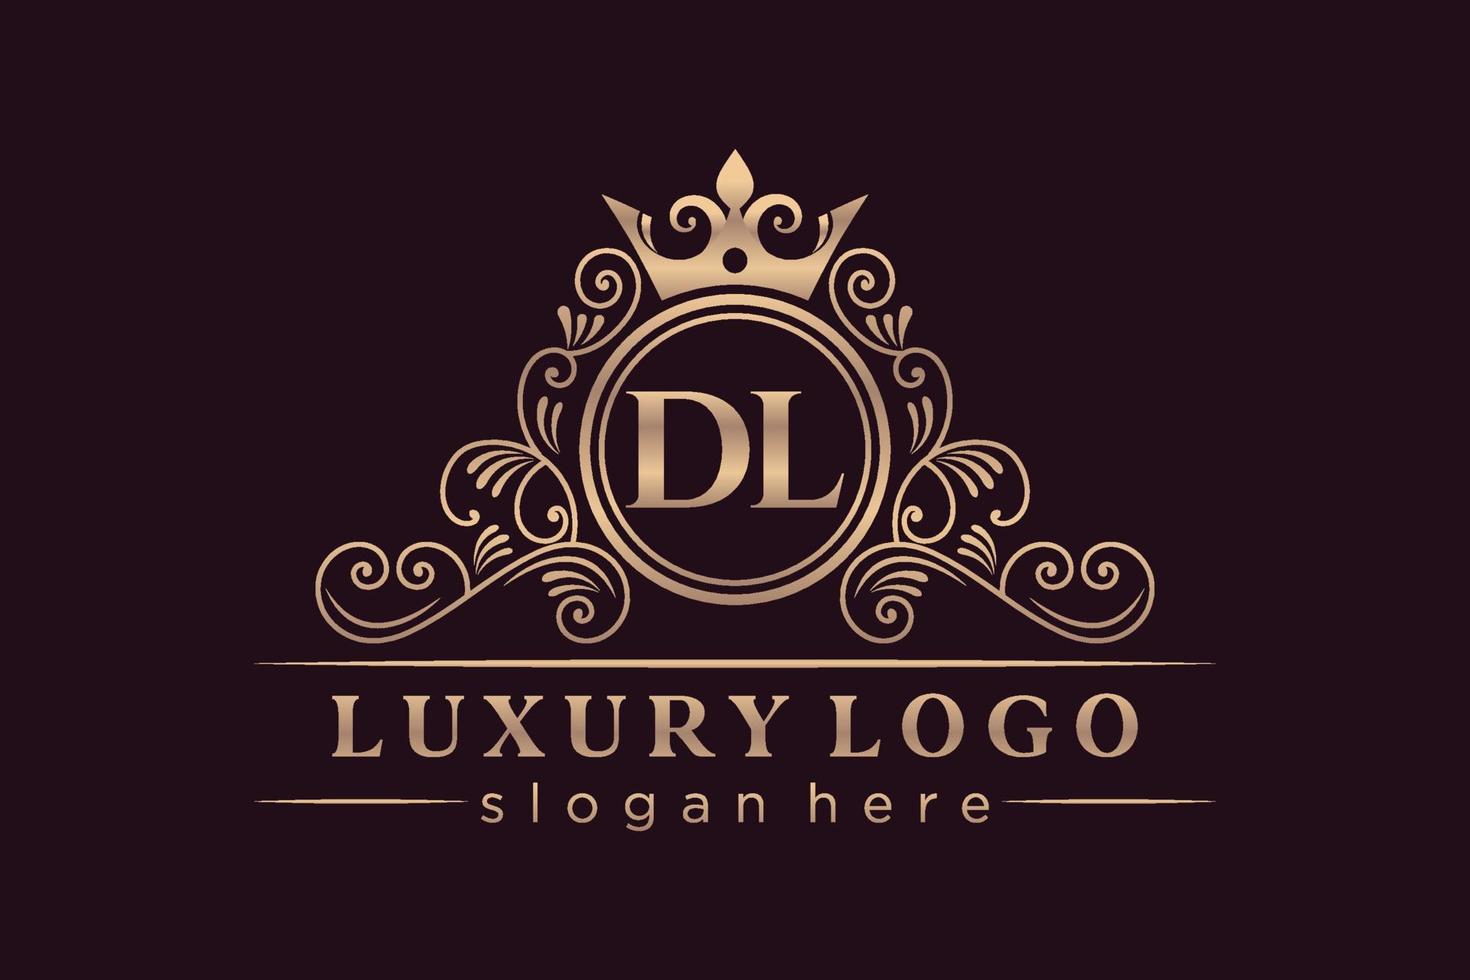 DL Initial Letter Gold calligraphic feminine floral hand drawn heraldic monogram antique vintage style luxury logo design Premium Vector